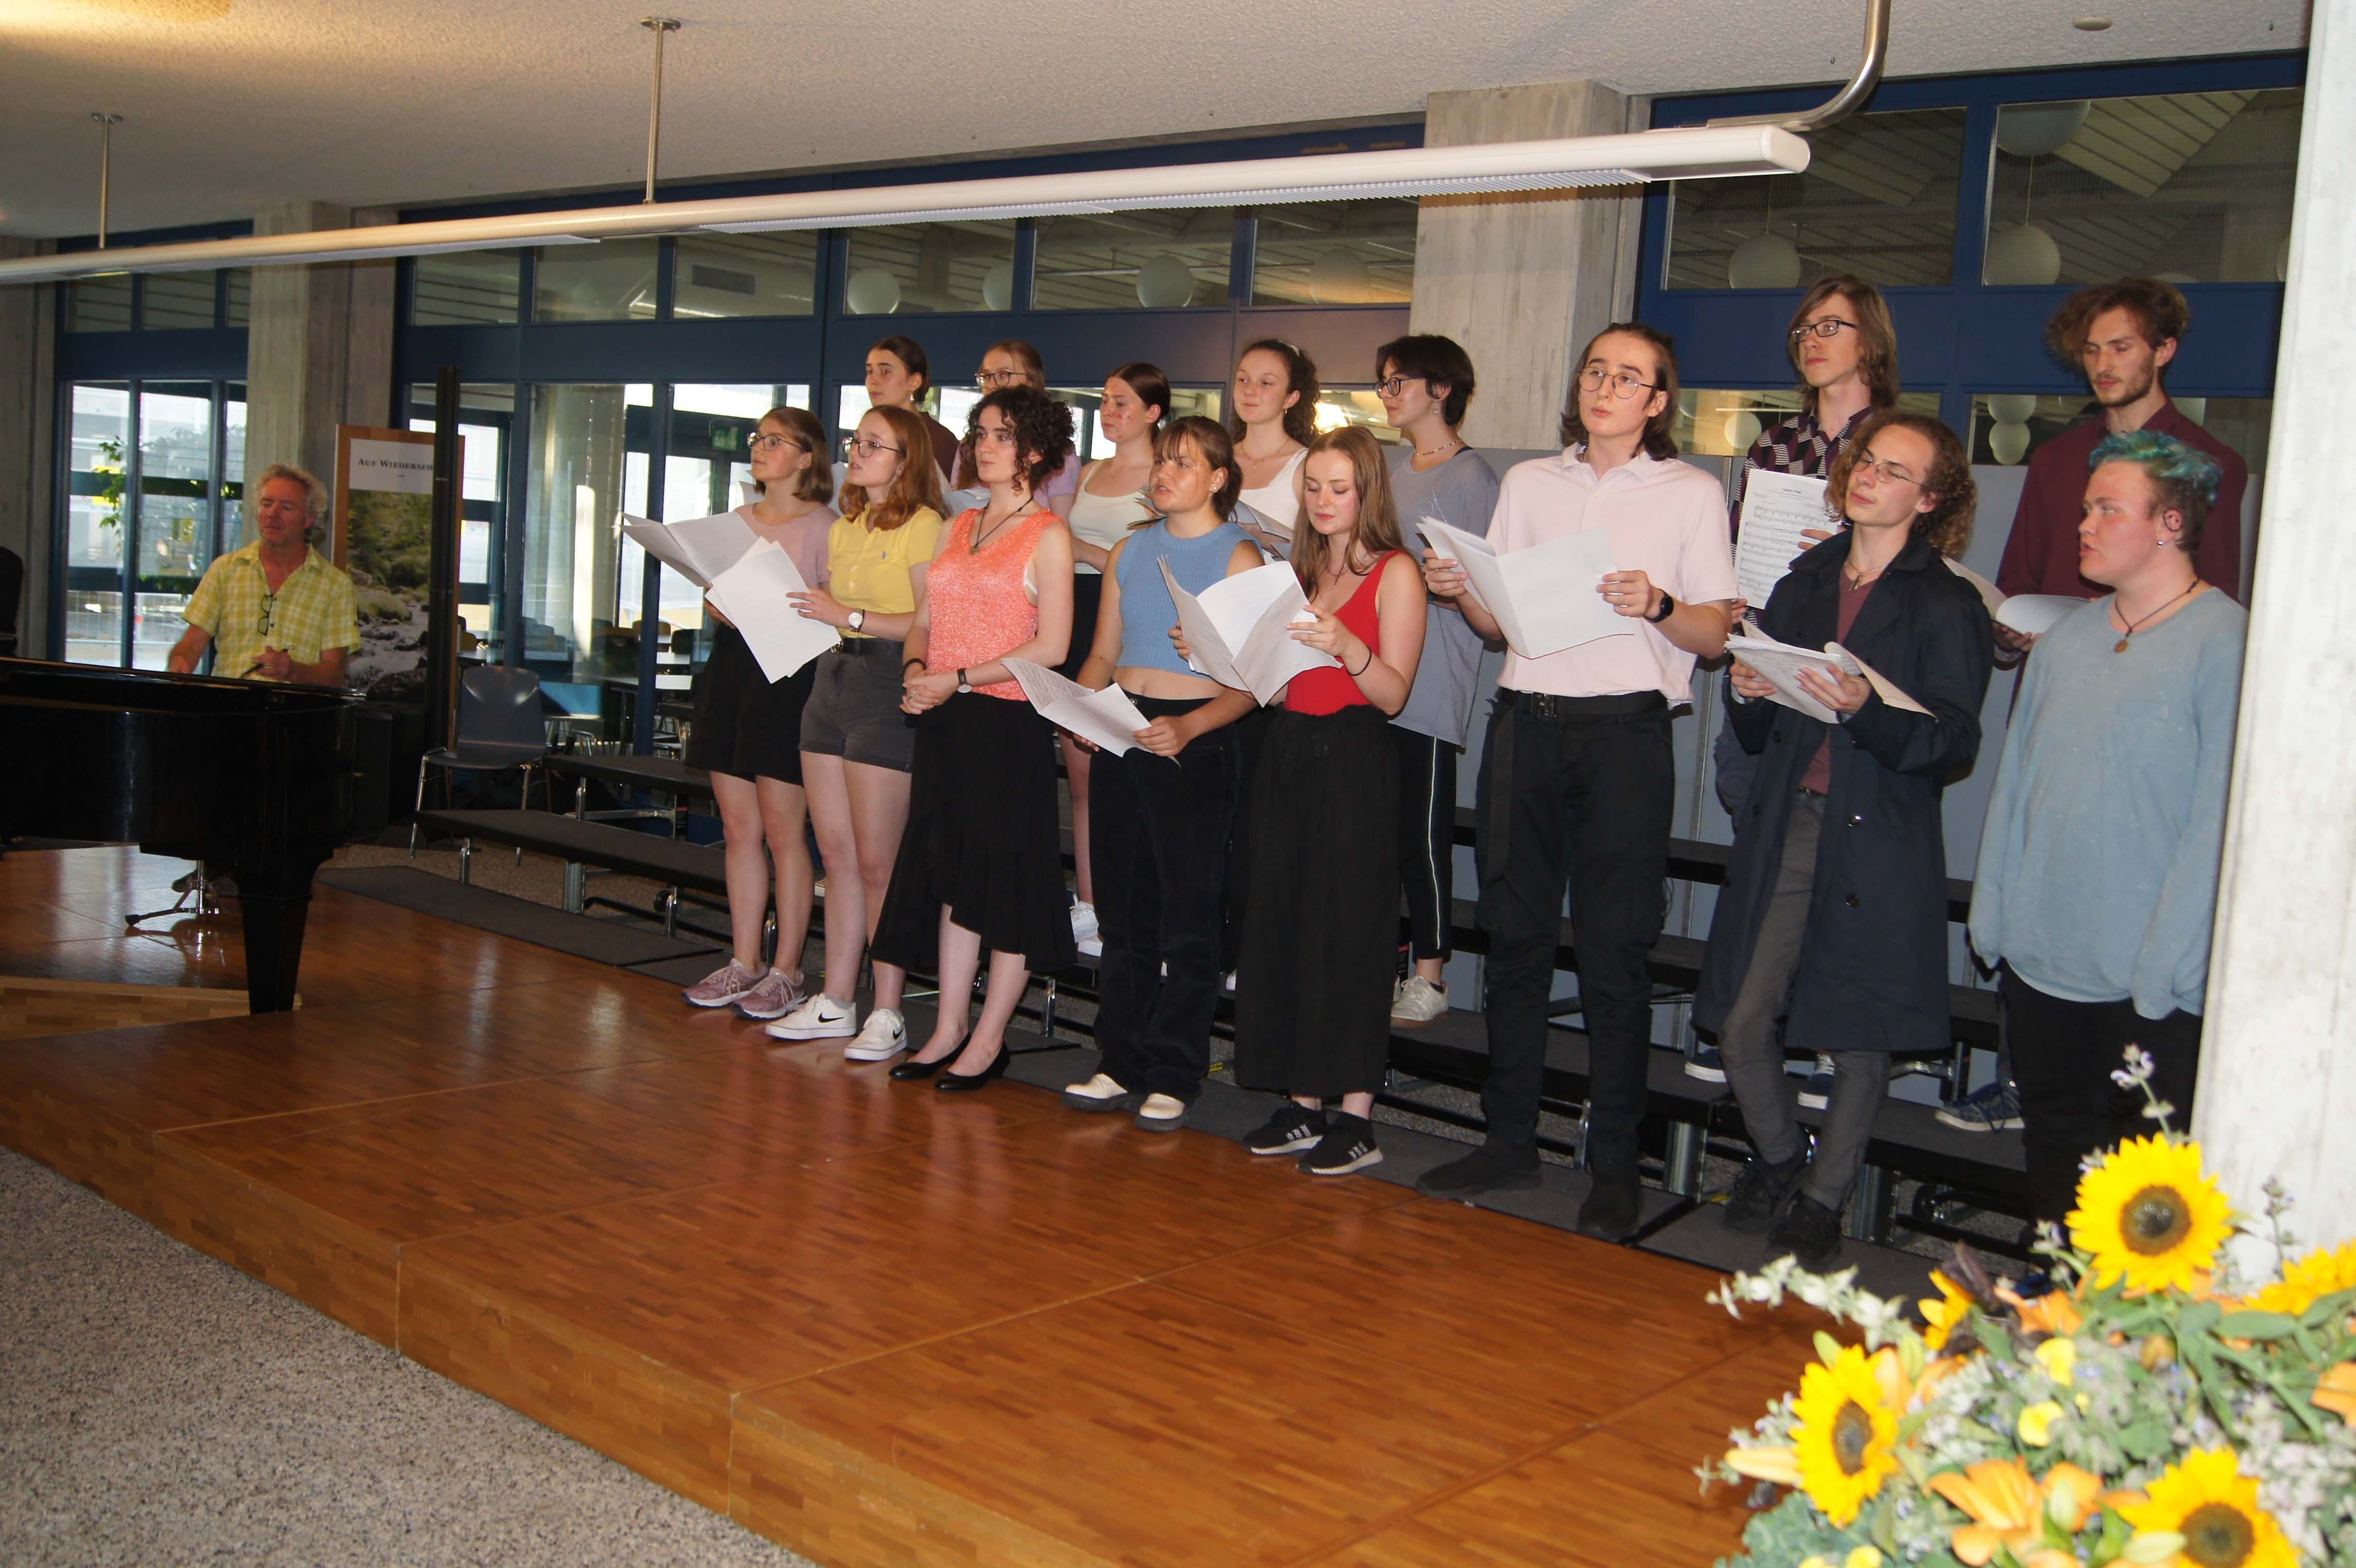 An der Kantonsschule Limmattal in Urdorf wird jeweils zum Ende des Schuljahres die traditionelle Serenade aufgeführt. Zuletzt fand diese 2019 statt.